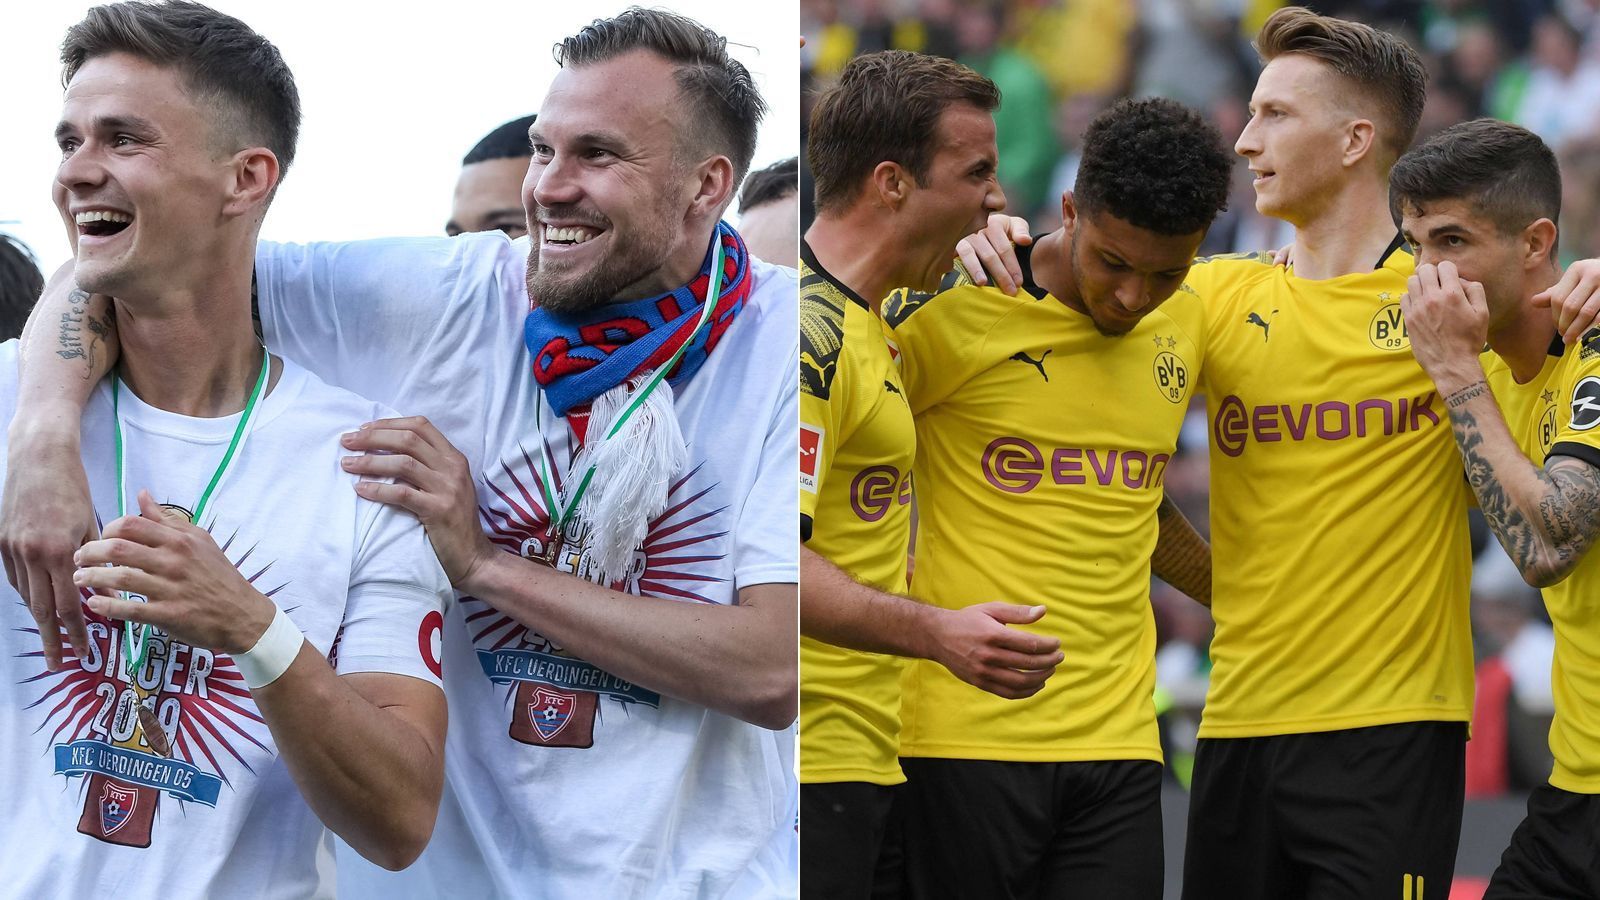 
                <strong>KFC Uerdingen - Borussia Dortmund</strong><br>
                "Jaaaaaaaaaaaaaaaaaaaaaaaaaaaa. Ich kann es nicht fassen!!! So schließt sich der Kreis. Ich spiele nicht nur gegen Freunde , sondern gegen meine Familie. Ich werde dieses Spiel von der ersten bis zur letzten Sekunde genießen", schrieb Uerdingens Kevin Großkreutz (2.v.l.) unmittelbar nach der Pokal-Auslosung bei Instagram, die für den ambitionierten Drittligisten das Los Borussia Dortmund brachte. Damit wurde Großkreutz' Wunsch erfüllt, der Routinier darf gegen seinen Herzensklub ran. Die Uerdinger, die im Frühjahr 2019 in der 3. Liga nur noch wenig überzeugend agierten, sicherten sich mit dem 2:1-Sieg im Finale des Niederrheinpokals gegen den Wuppertaler SV das Ticket für den DFB-Pokal. Gespielt wird die Begegnung gegen den BVB in Düsseldorf, wo der KFC in der nächsten Saison seine Heimspiele austragen wird. Zuletzt trafen Uerdingen und der BVB im Jahr 1996 aufeinander. Damals gewann die Borussia in der Bundesliga gegen damals noch Bayer Uerdingen mit 5:0.
              